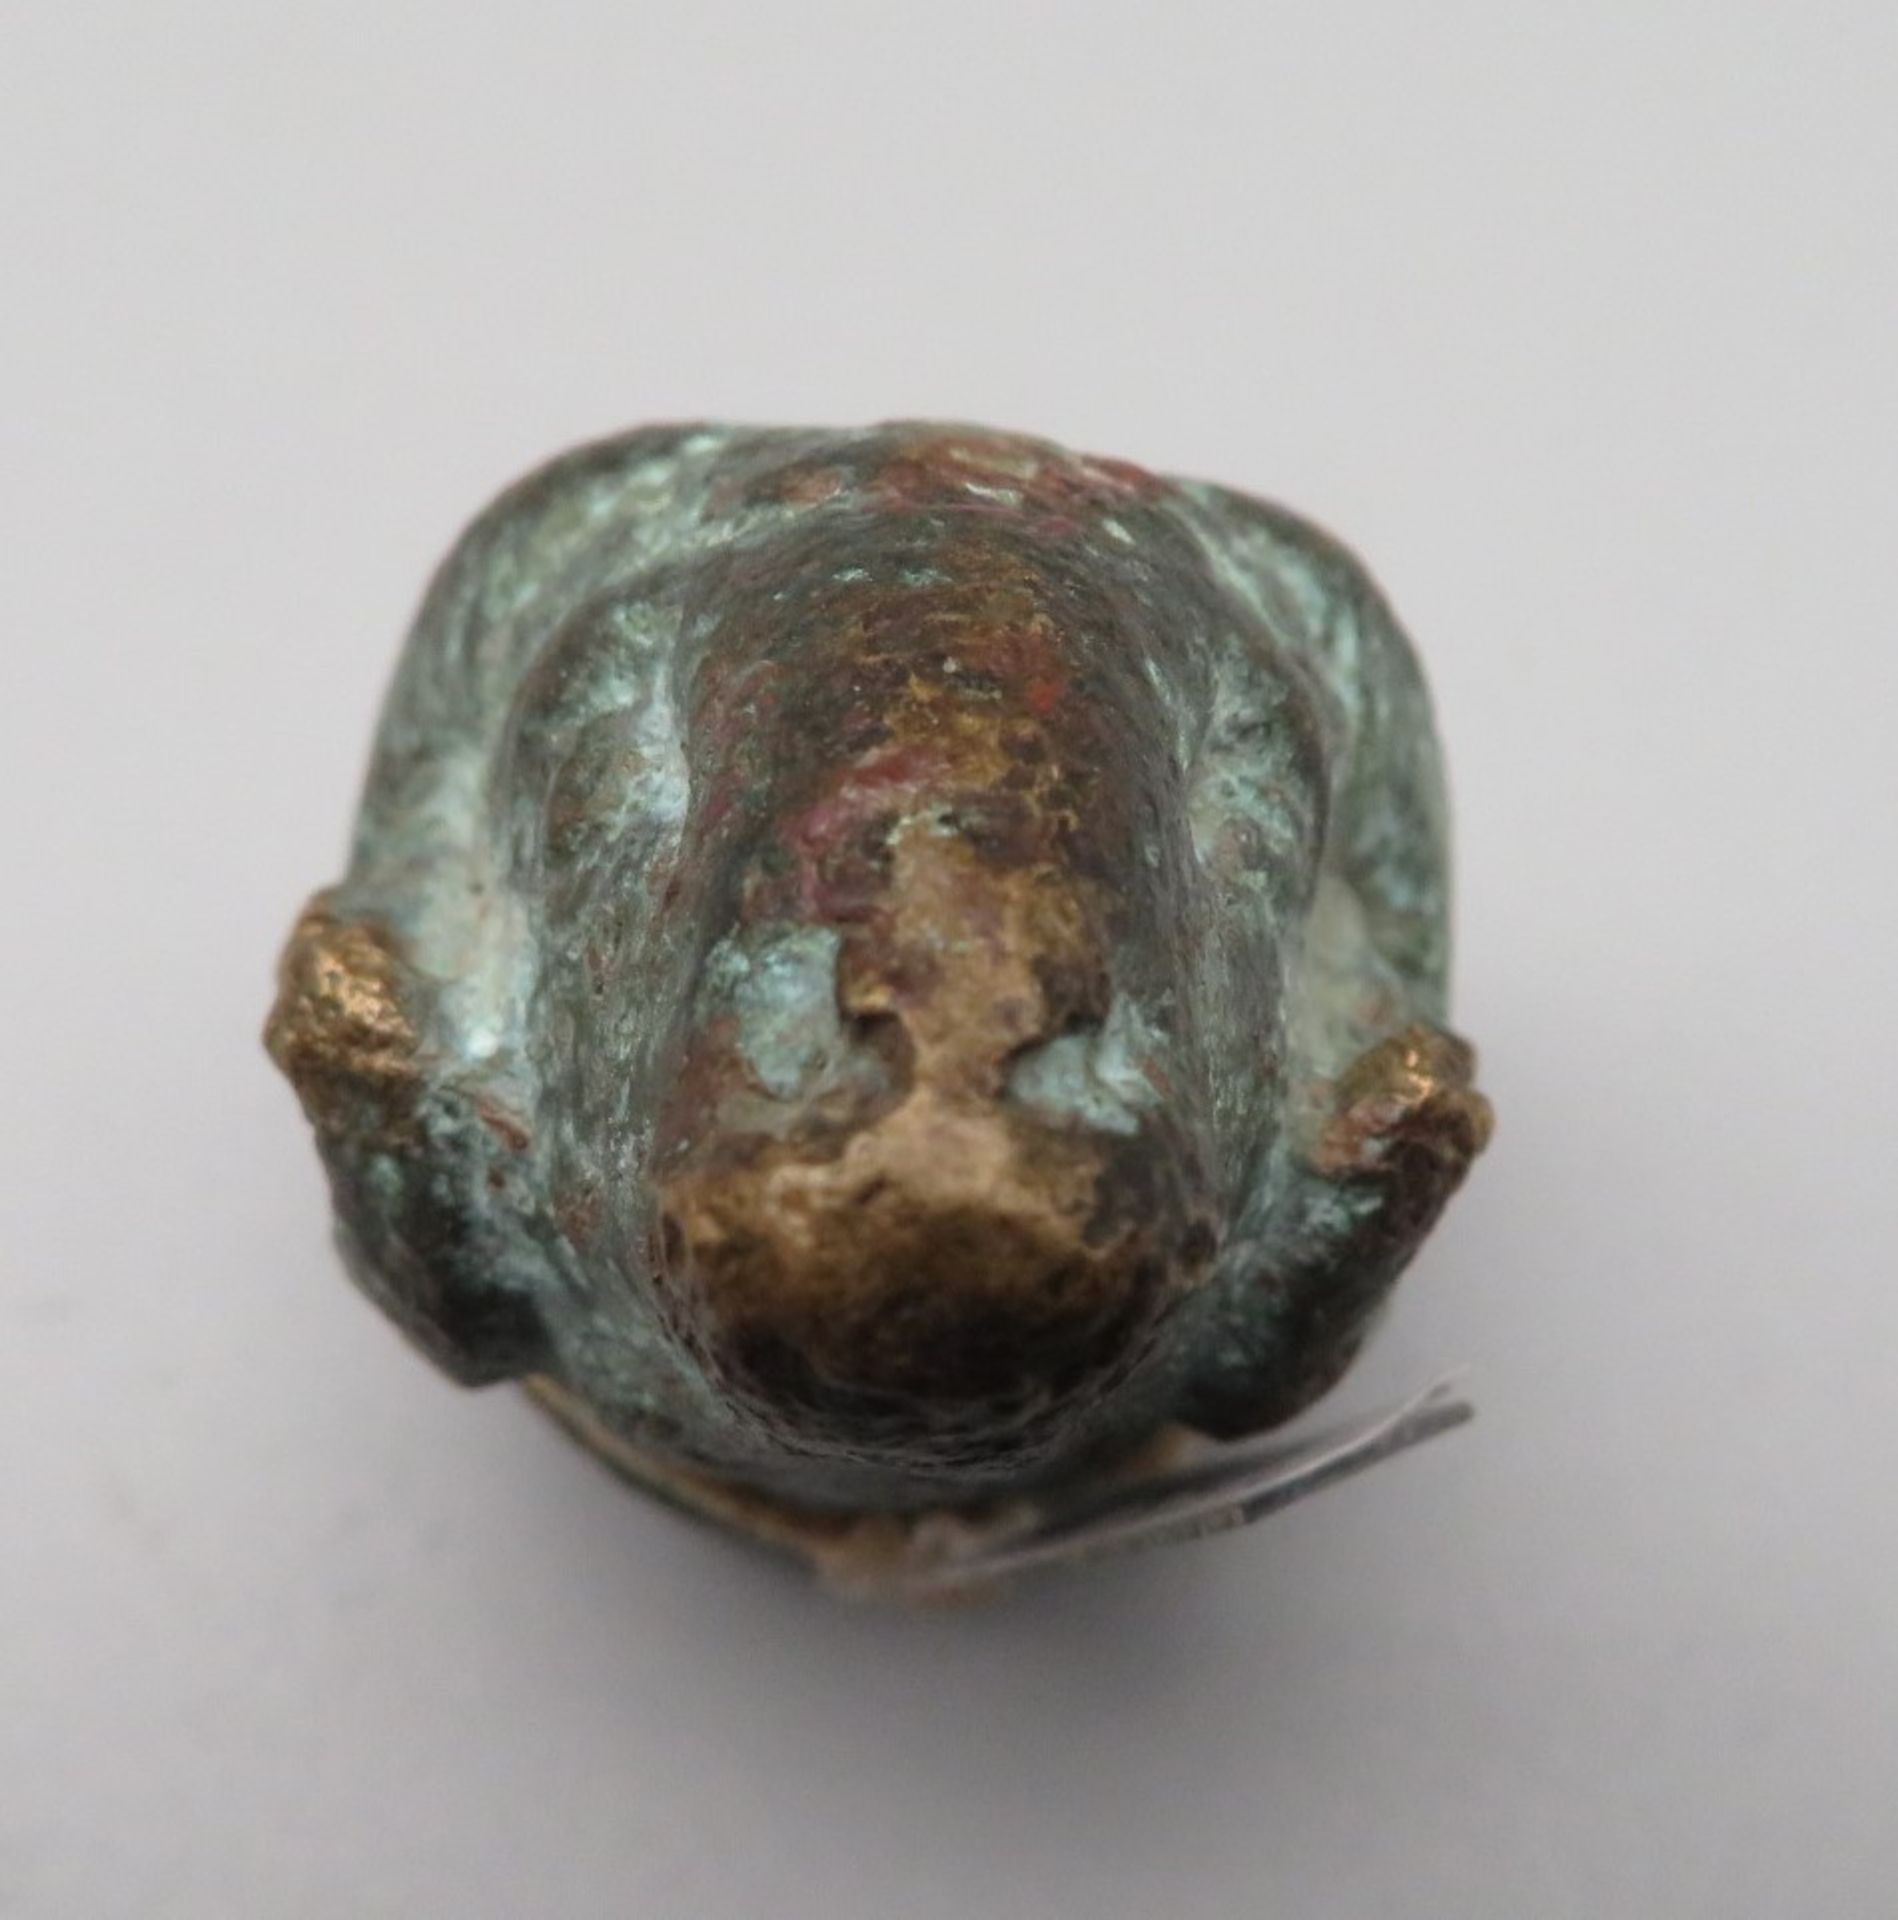 Antike Ausgrabung in Gestalt eines Widderkopfs, wohl Griechisch/Römisch, Bronze, wohl Endzier eines - Image 2 of 3